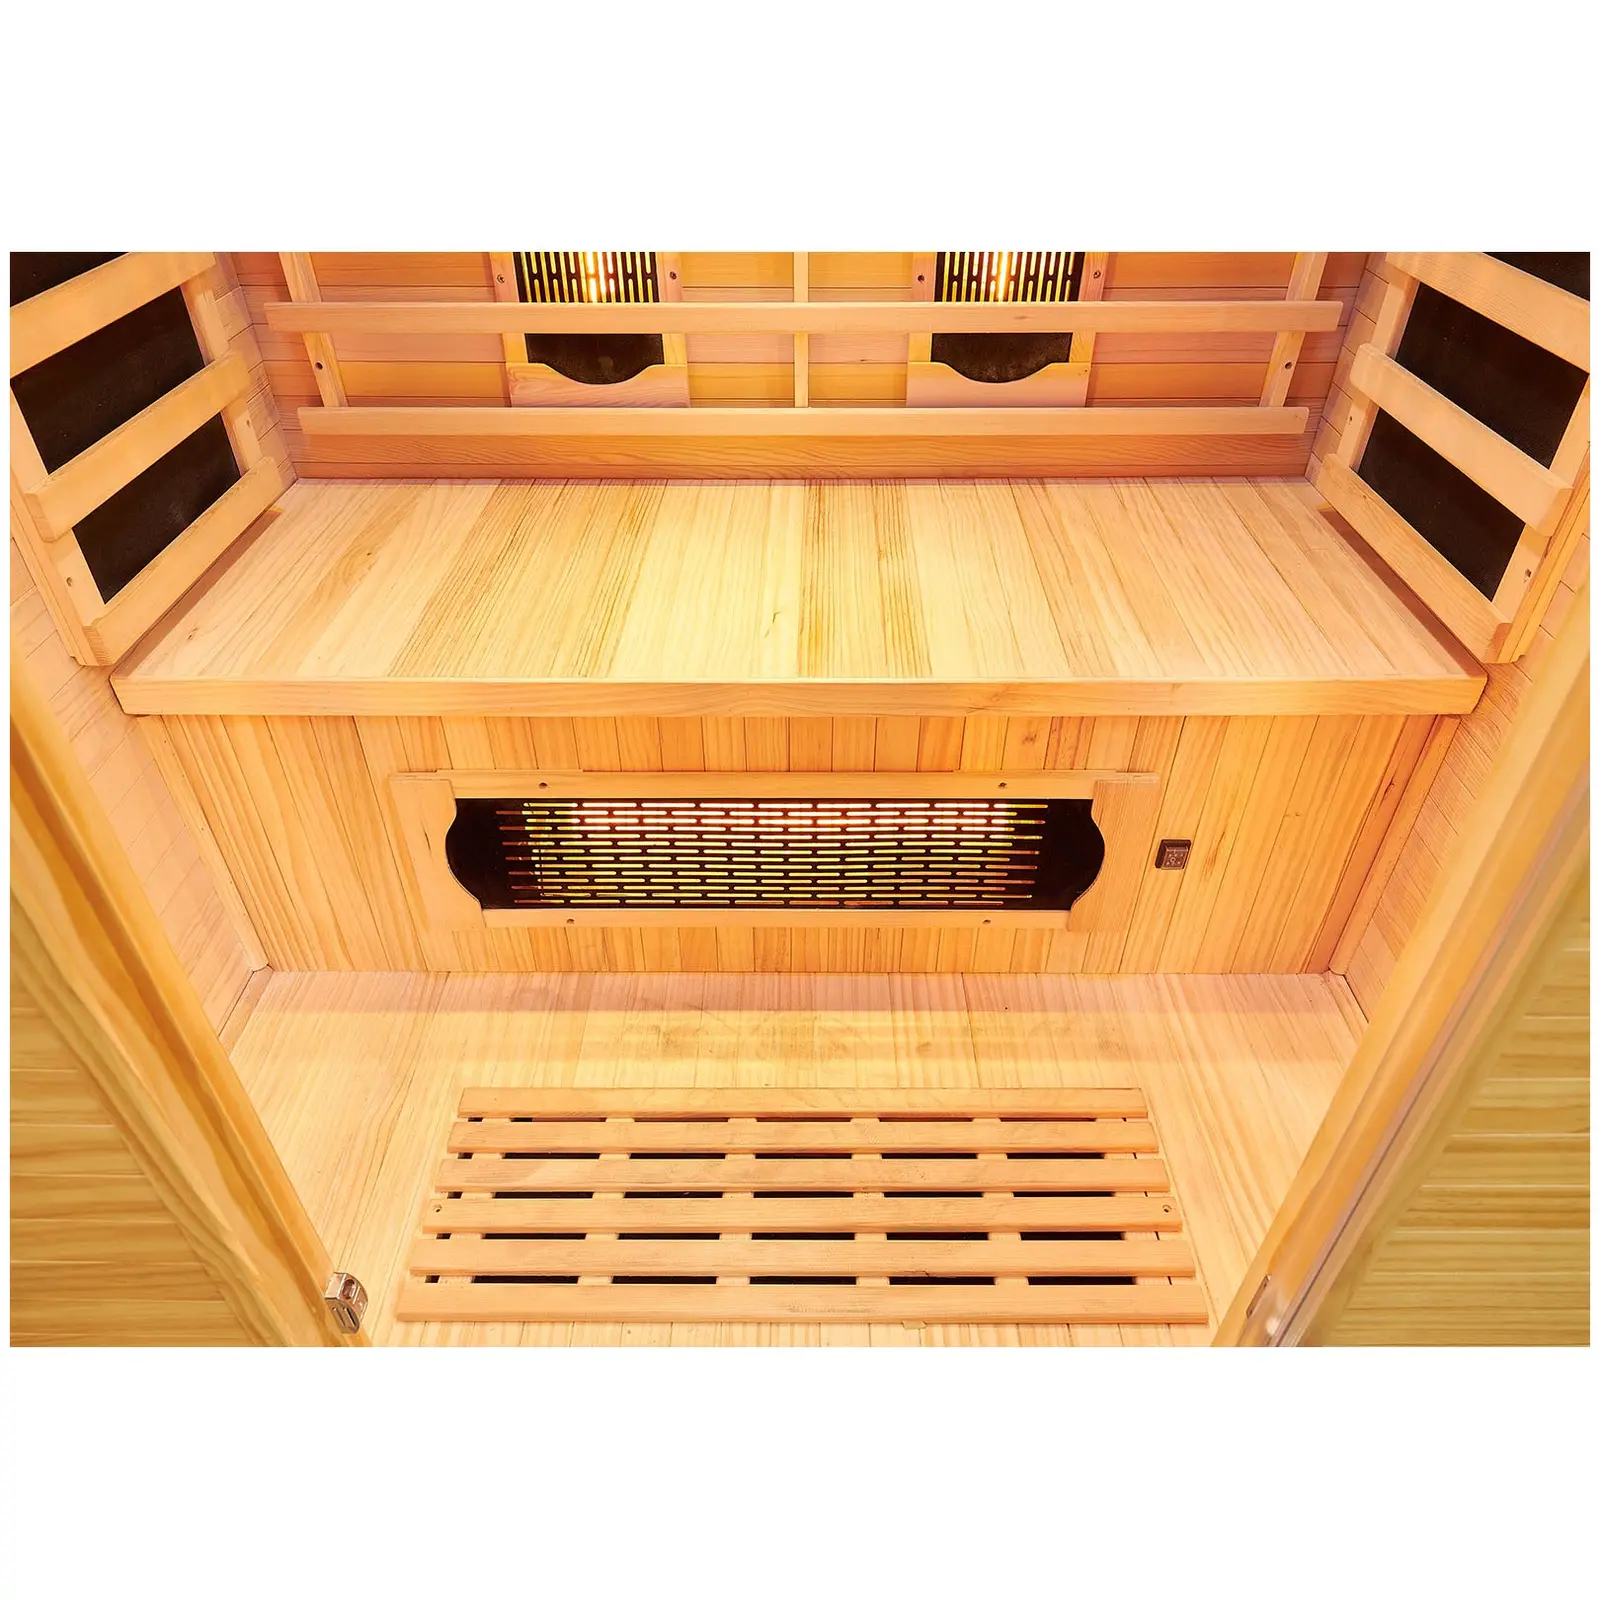 Sauna infrarouge - 5 émetteurs à spectre complet - 2 personnes - 2 100 W - 15-65 °C